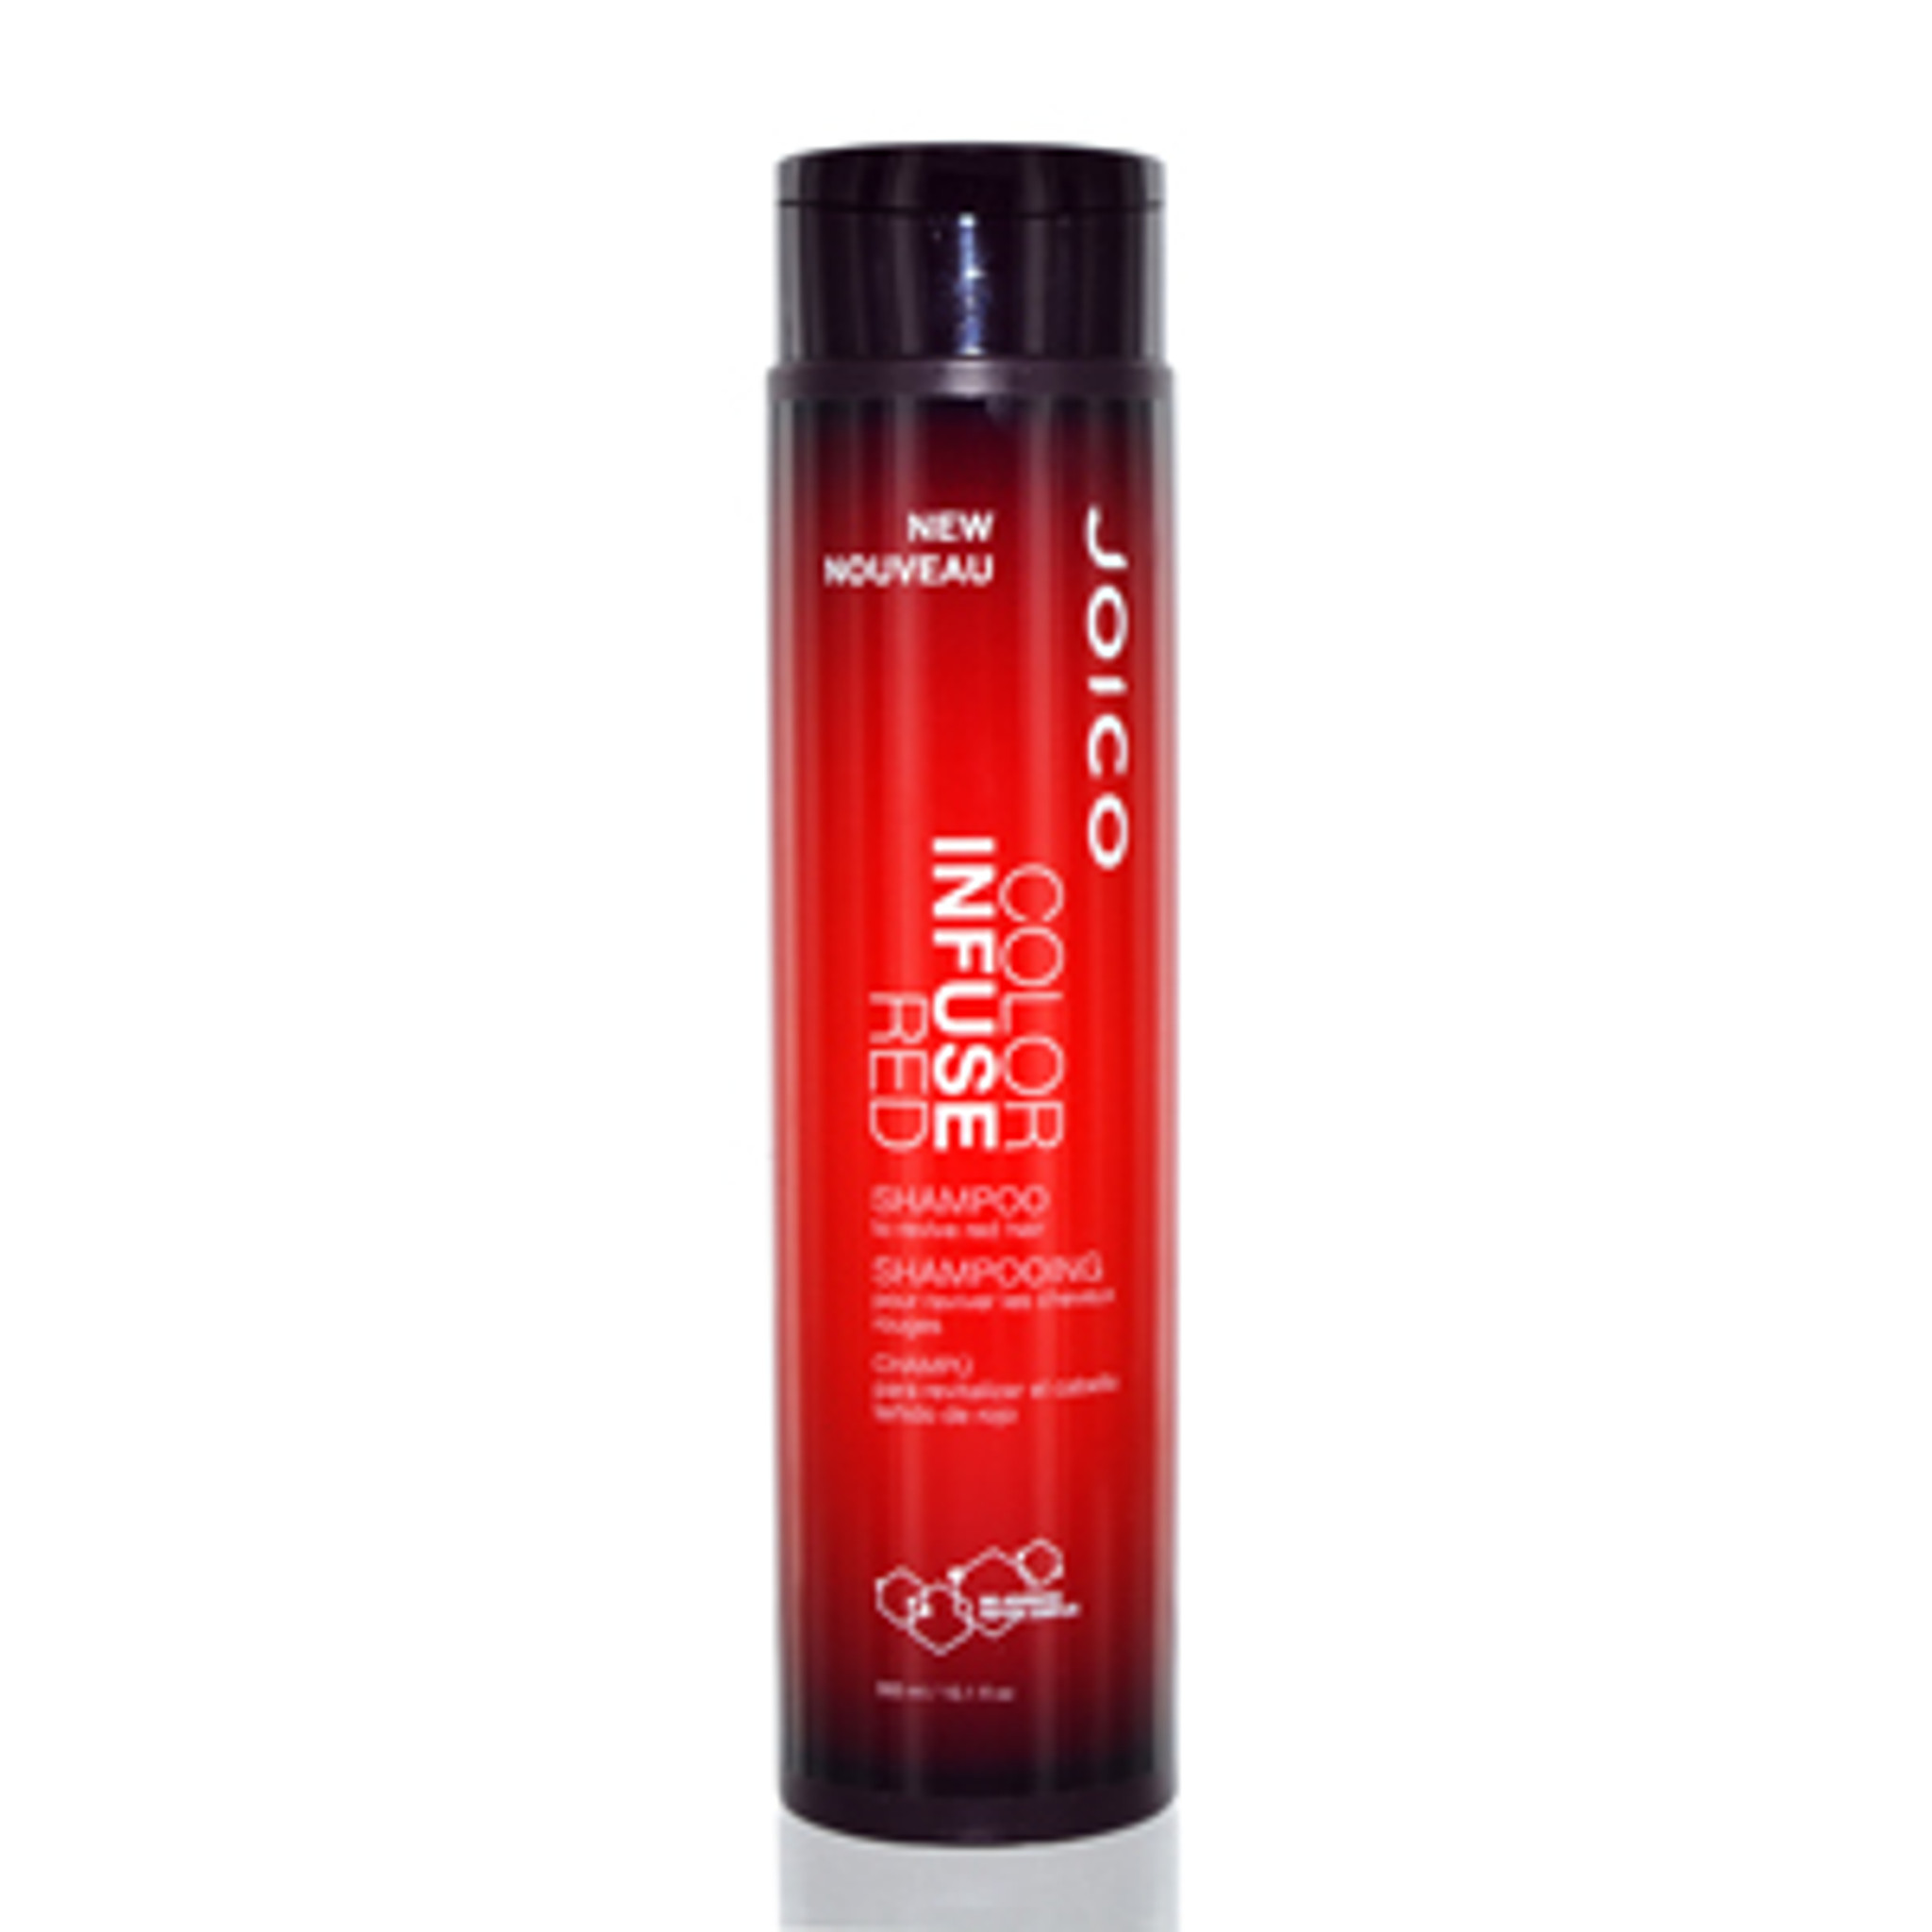 Joico farve tilføre rød/joico shampoo for at genoplive rødt hår 10,1 oz (300